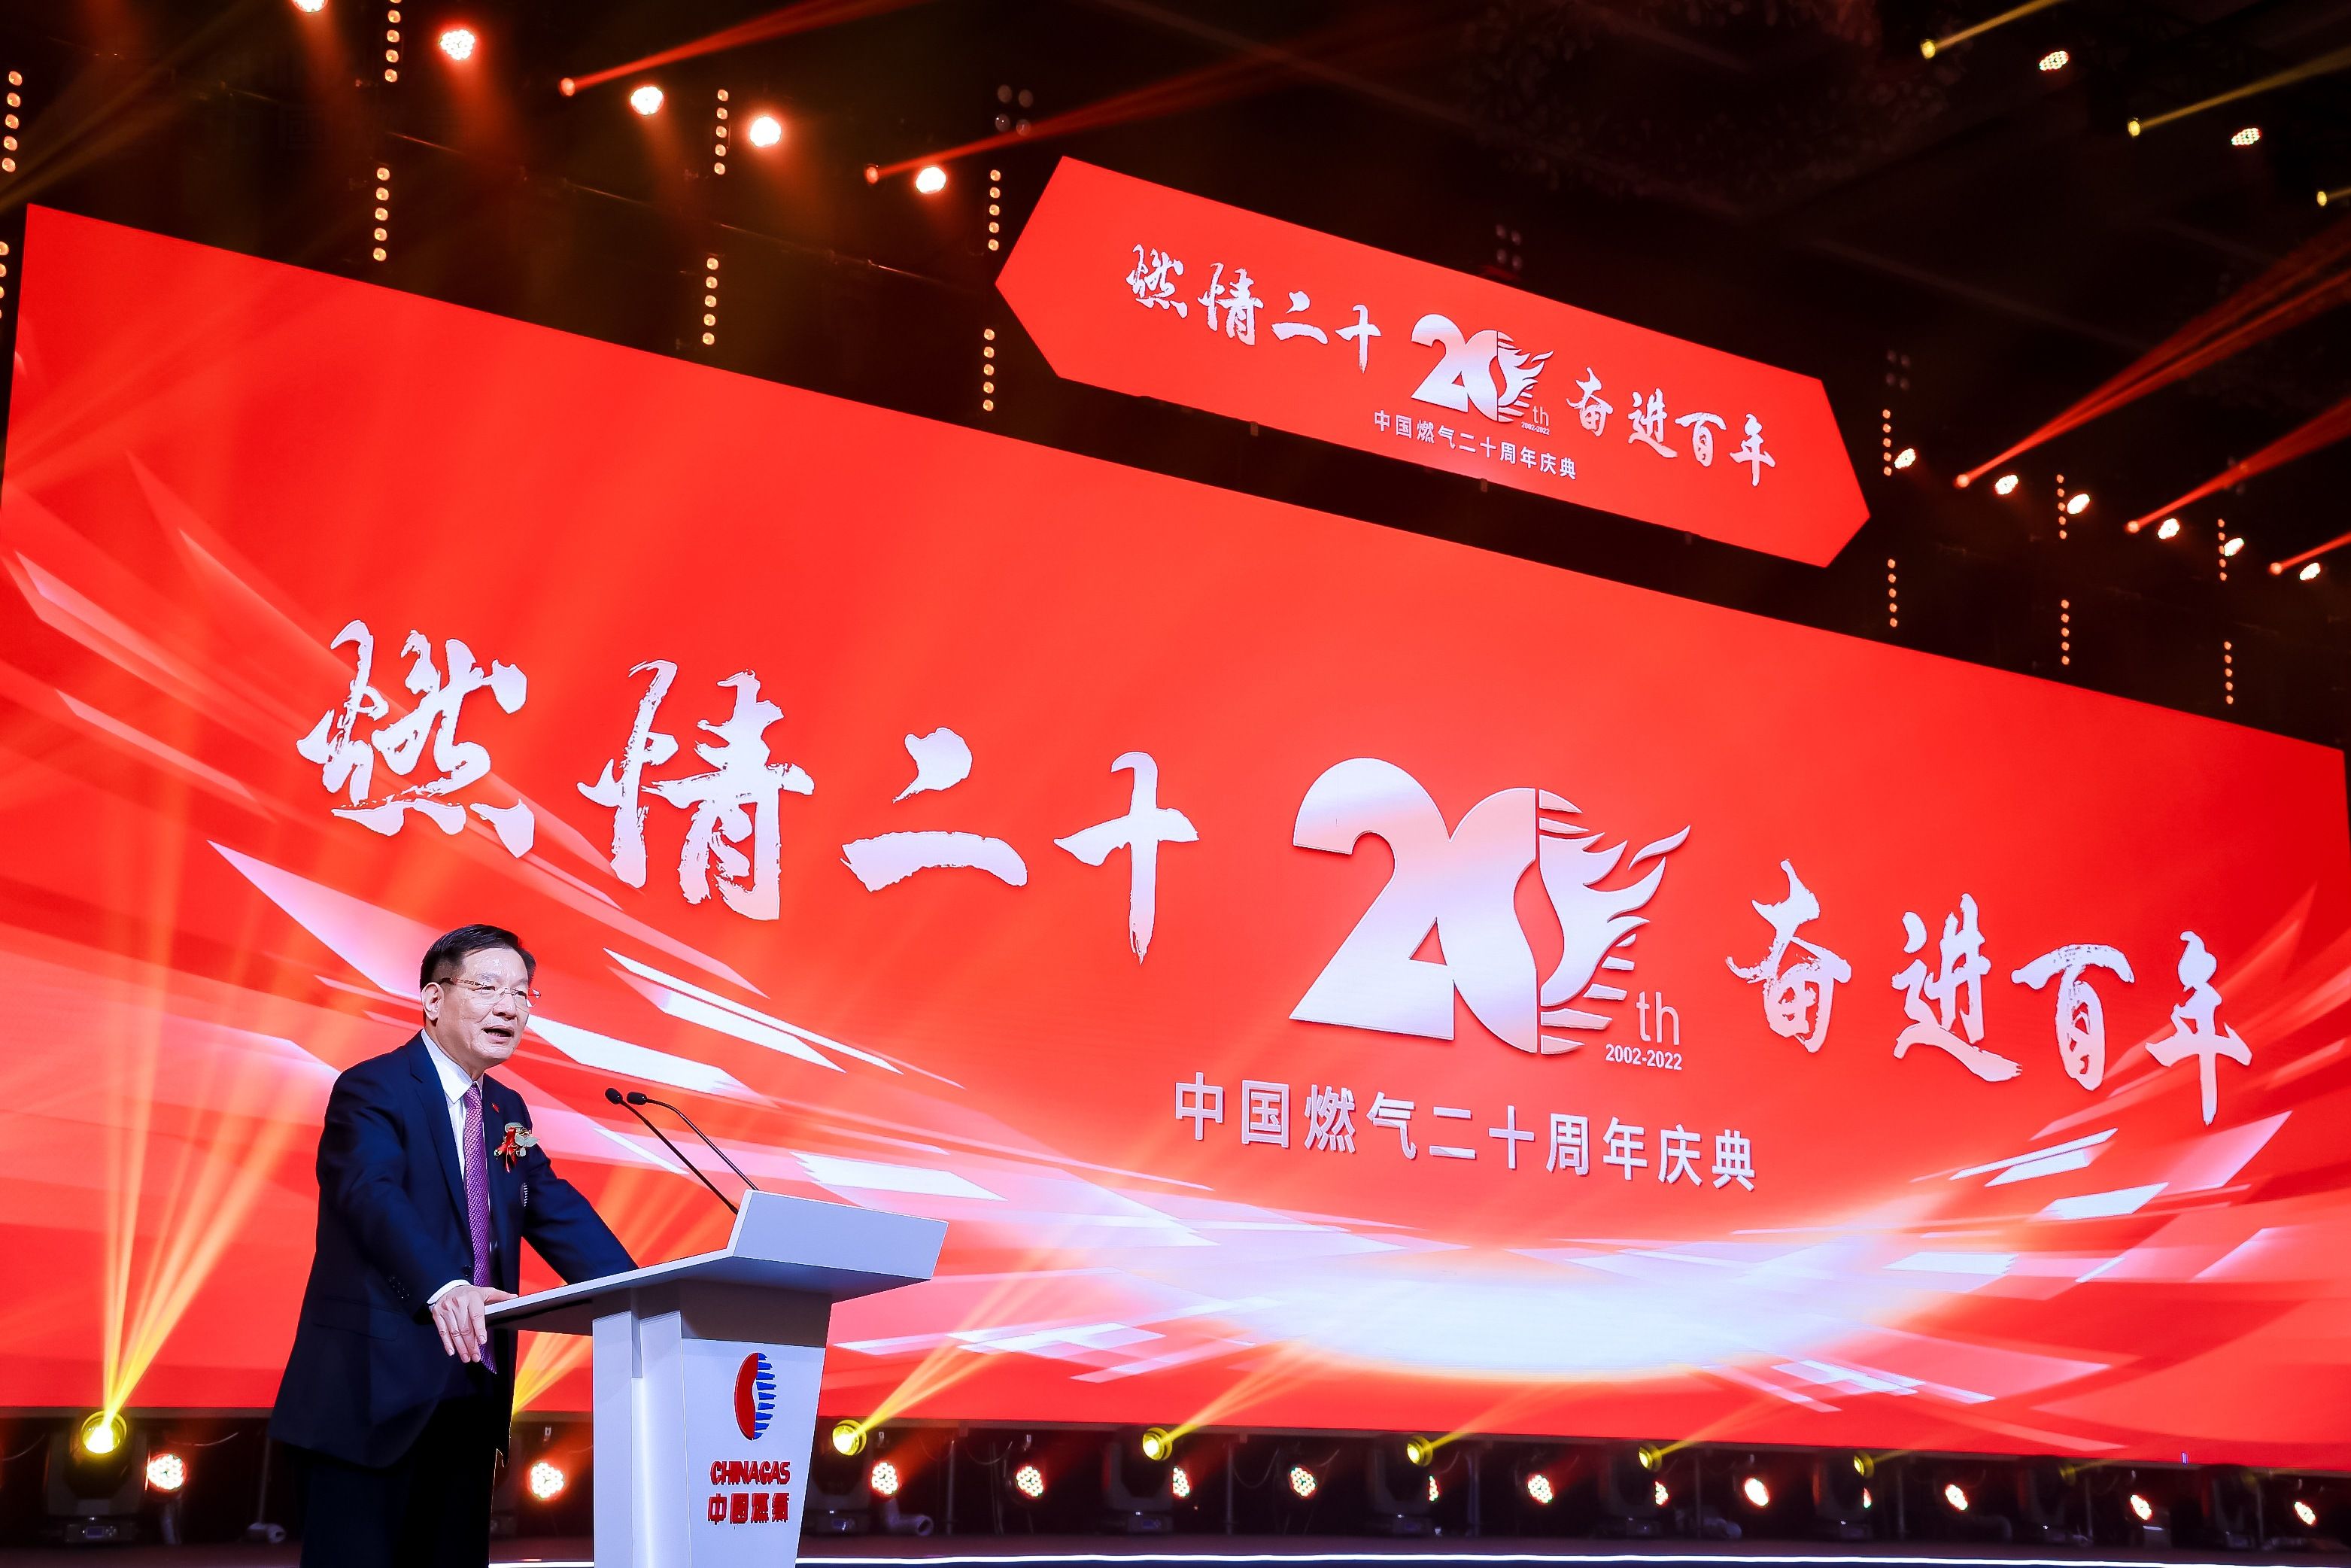 中国燃气在深举办二十周年庆 宣布新零售、数字化、绿色能源三大未来布局